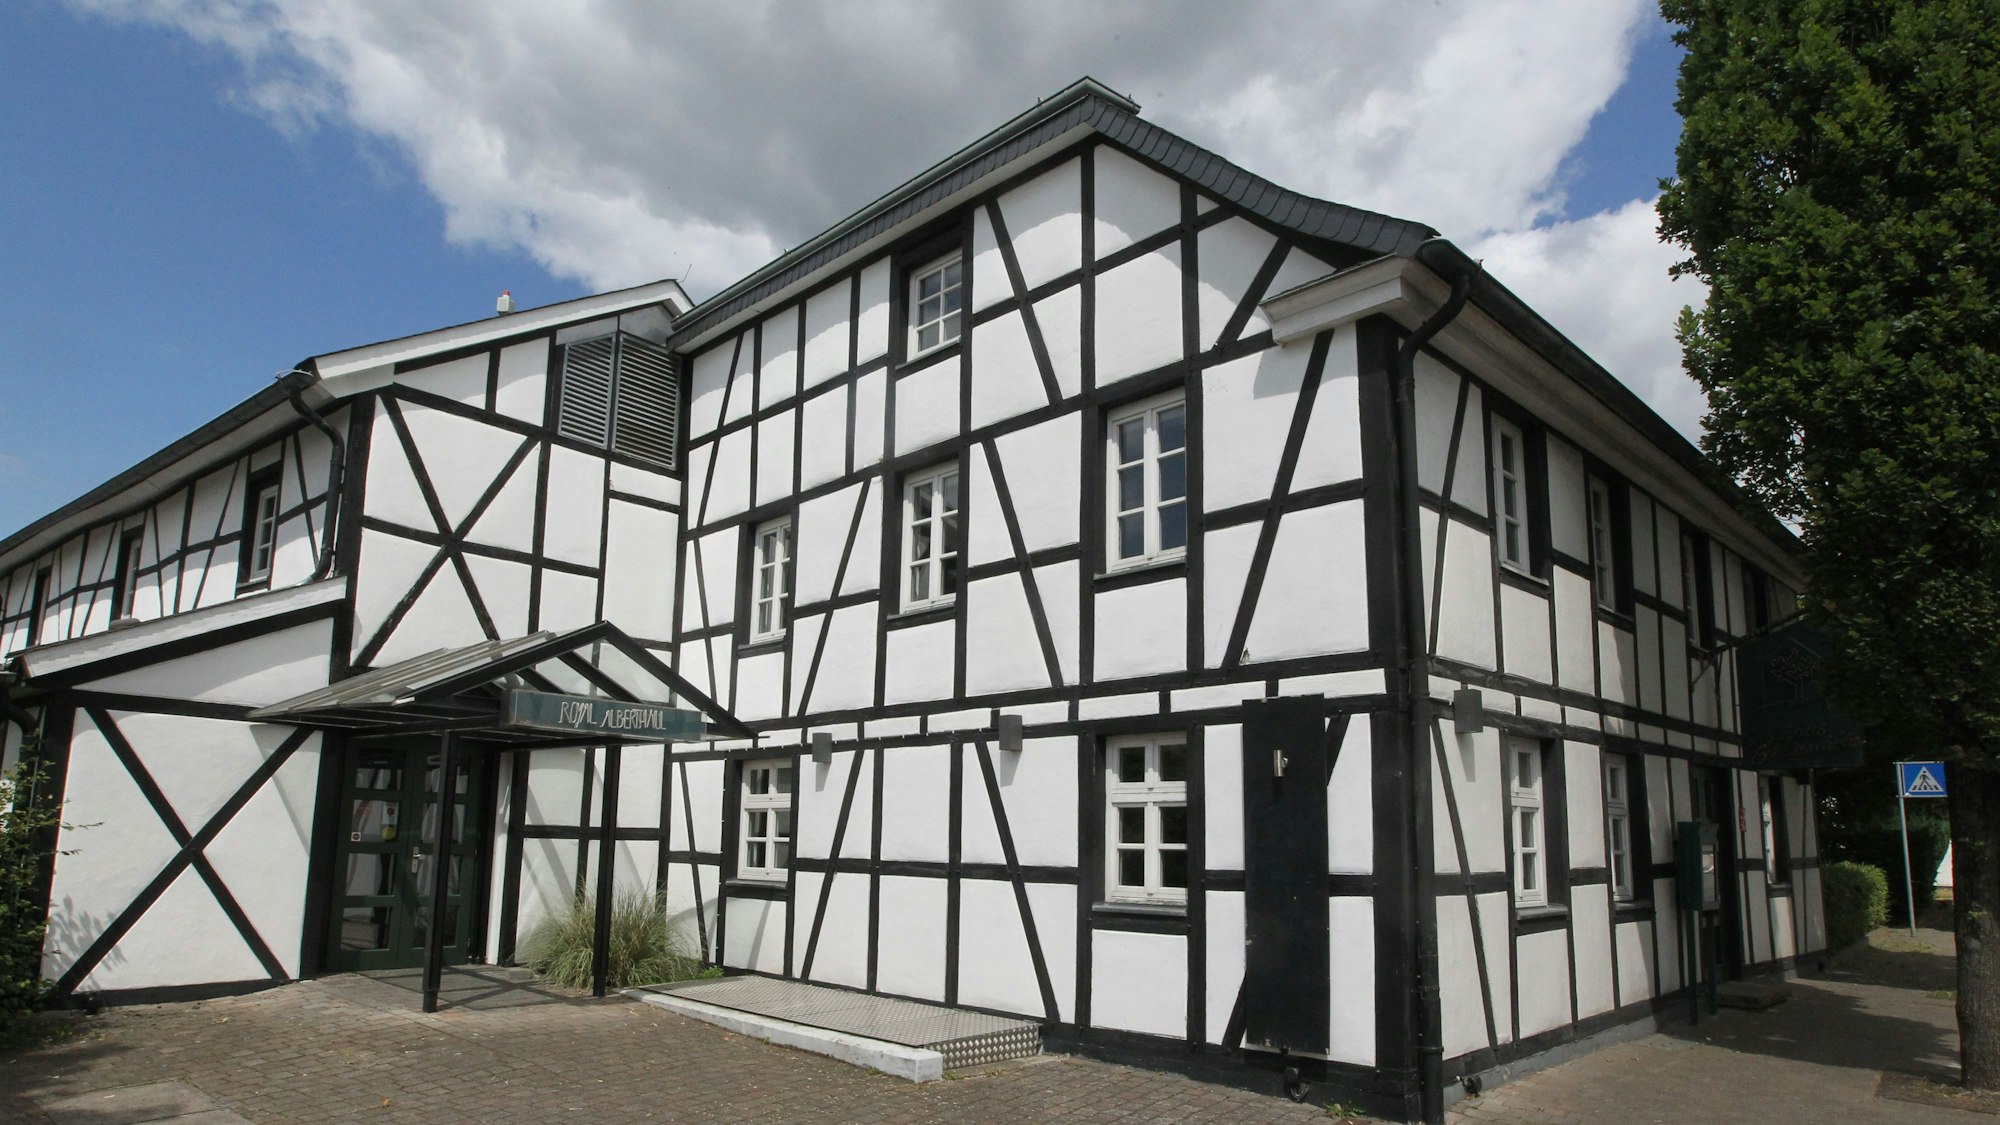 Das Restaurant Scheiderhöhe in Lohmar ist ein altes Fachwerkhaus.